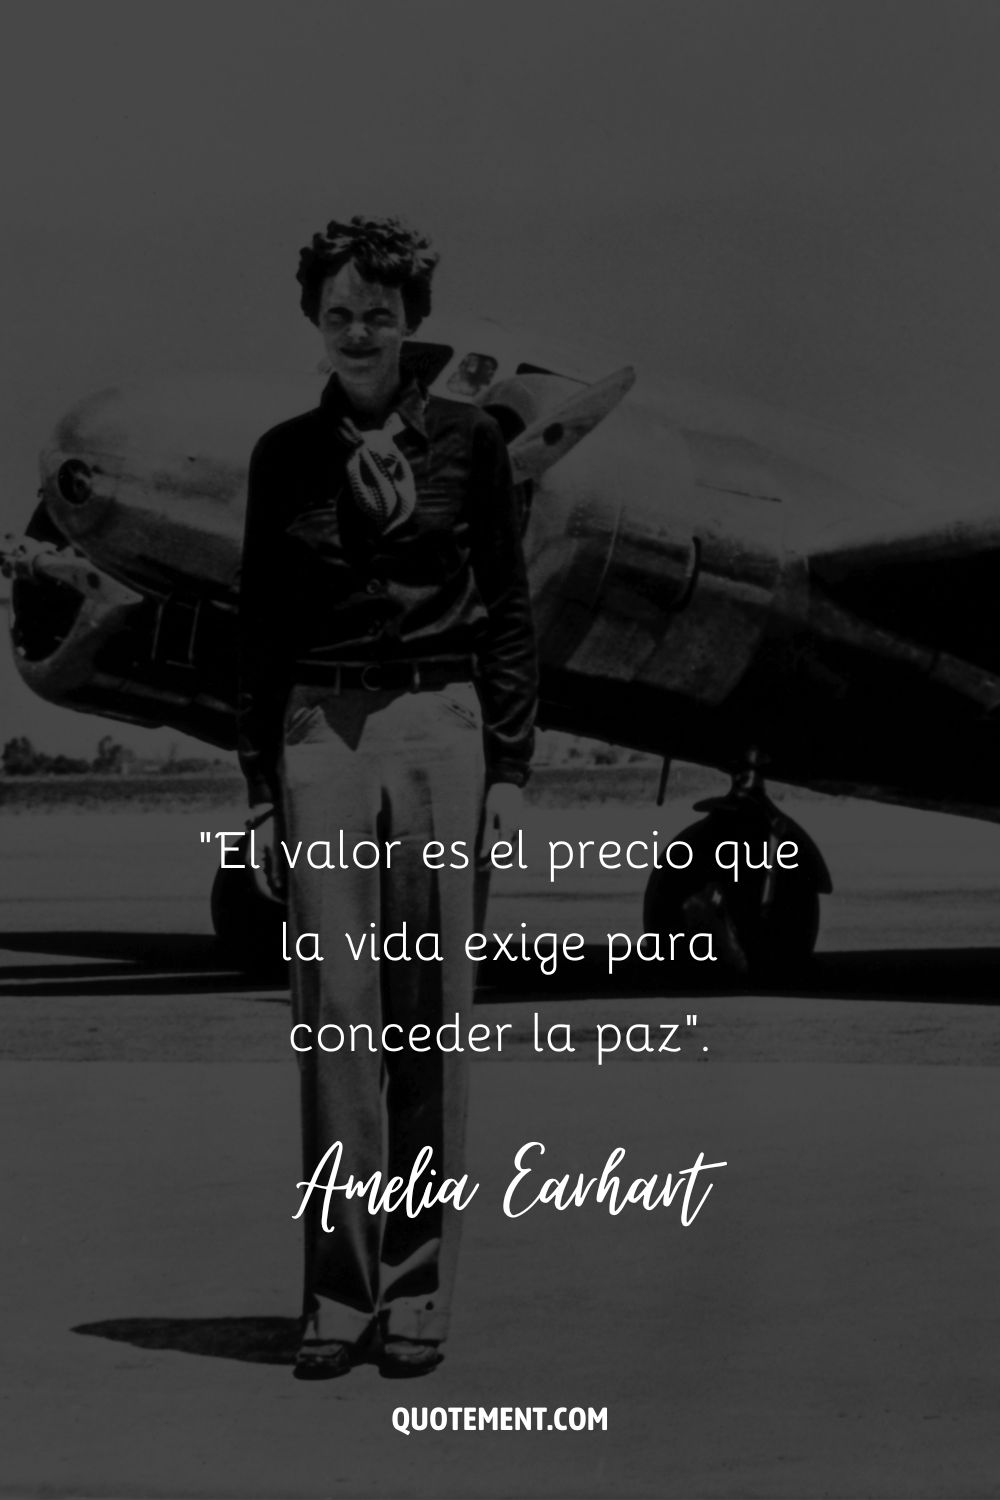 "El valor es el precio que la vida exige para conceder la paz". - Amelia Earhart